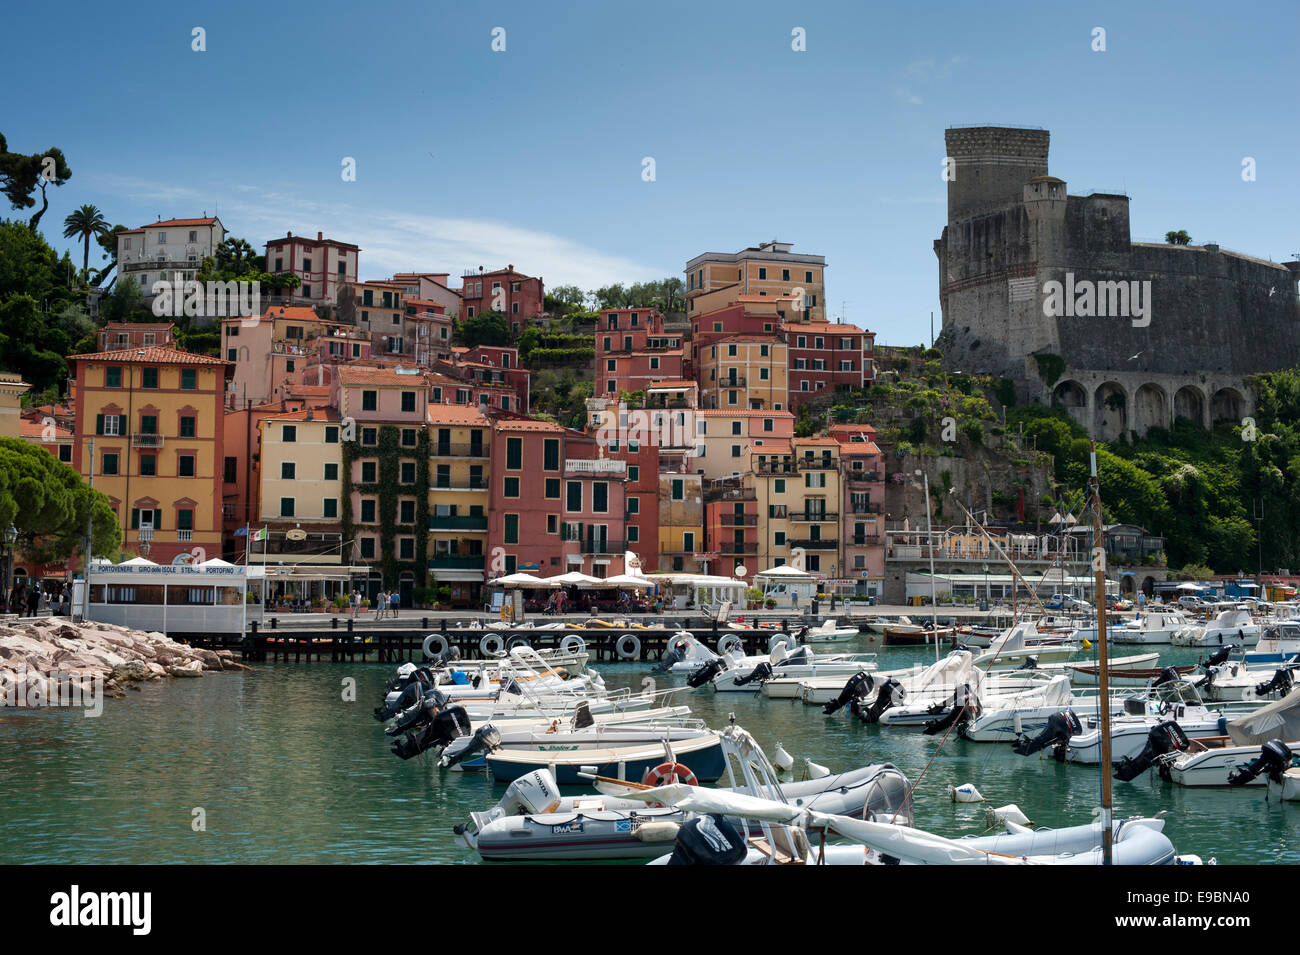 Italian Riviera,Colourwashed houses, coastal, boats, holiday destination Stock Photo